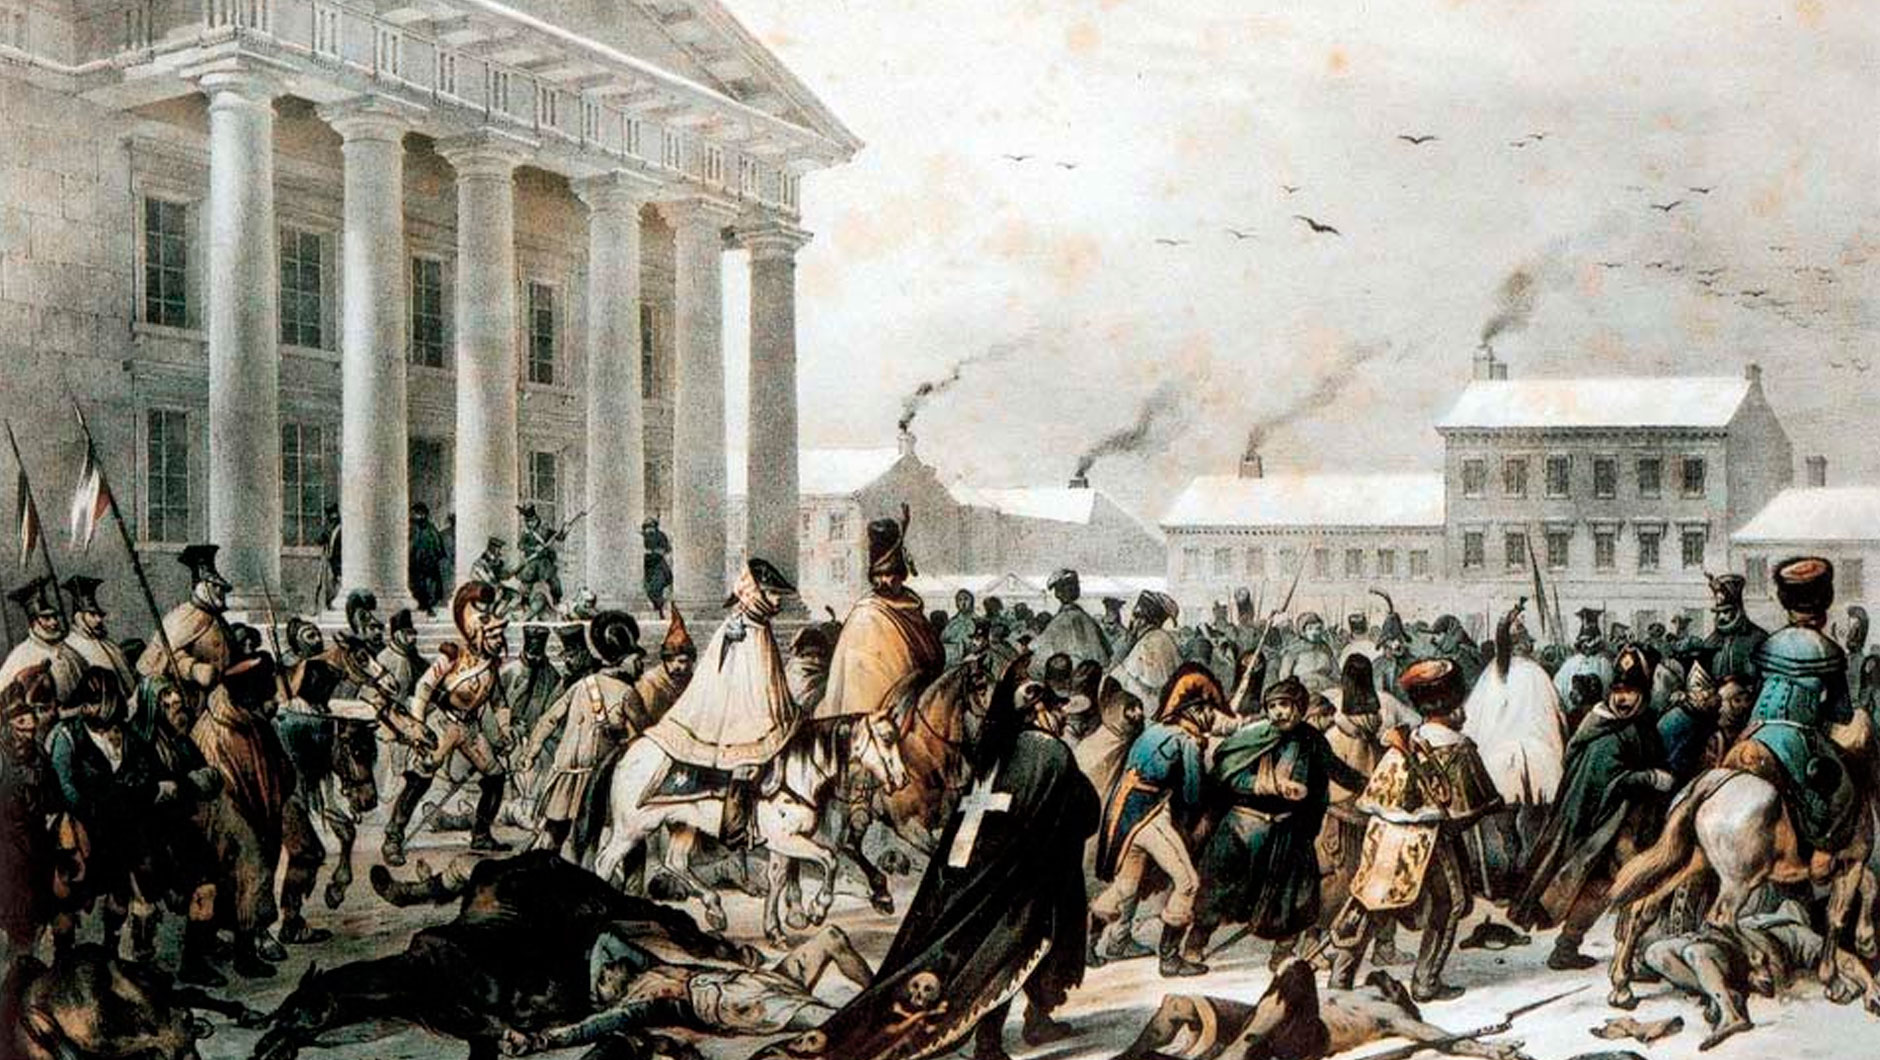 Ян Дамель, “Отступление французов через Вильно в 1812 году”. Первая половина 19 века